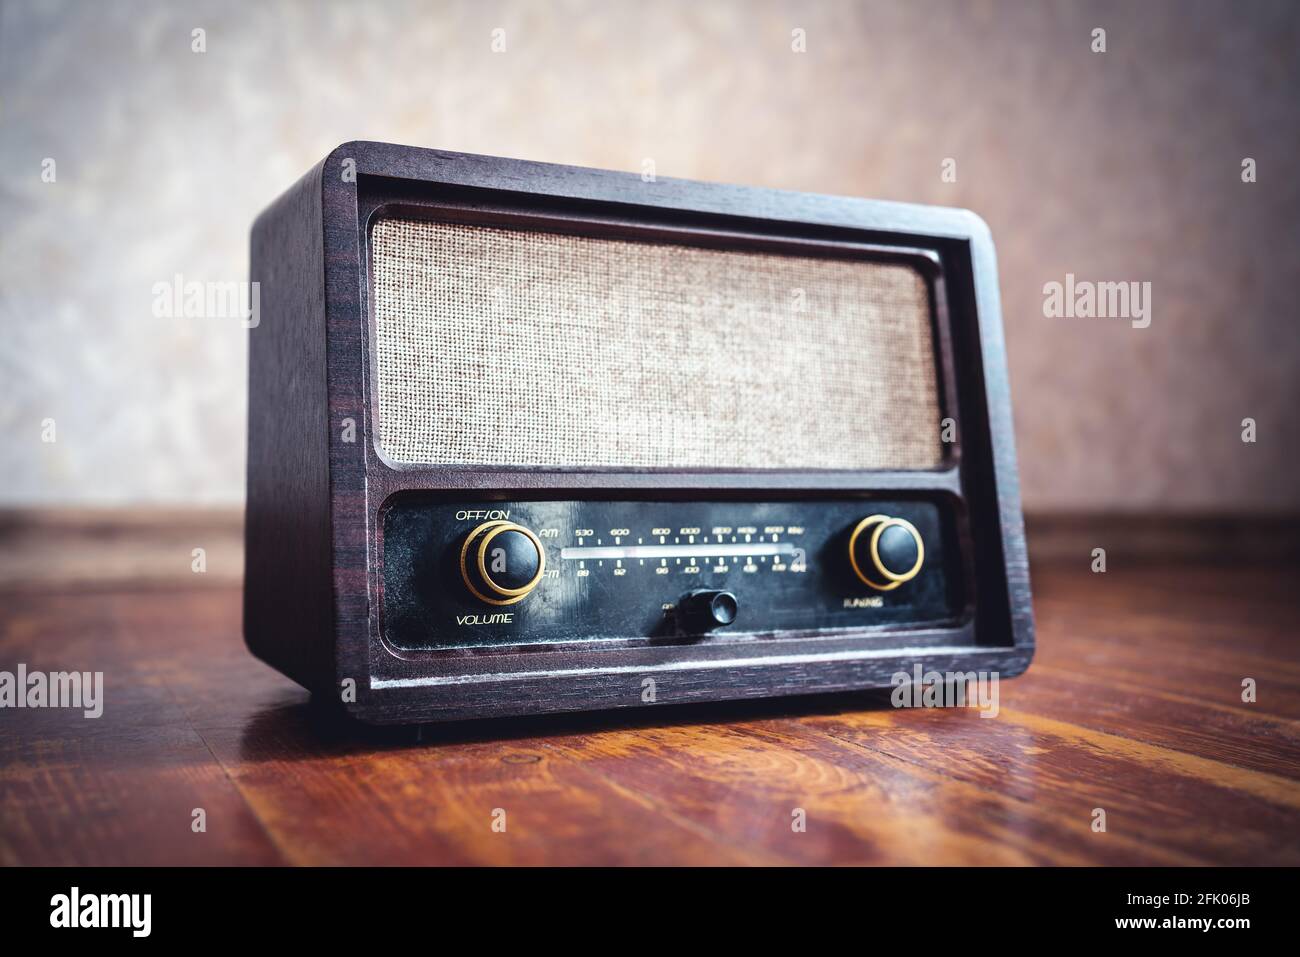 Retro-Radio. Alter Vintage-Musik-Player im 60er-Jahre-Stil. Staubiger  Empfänger, Lautsprecher und Boombox. Technologie-Nostalgie. Drehknöpfe und  Frequenztuner Stockfotografie - Alamy